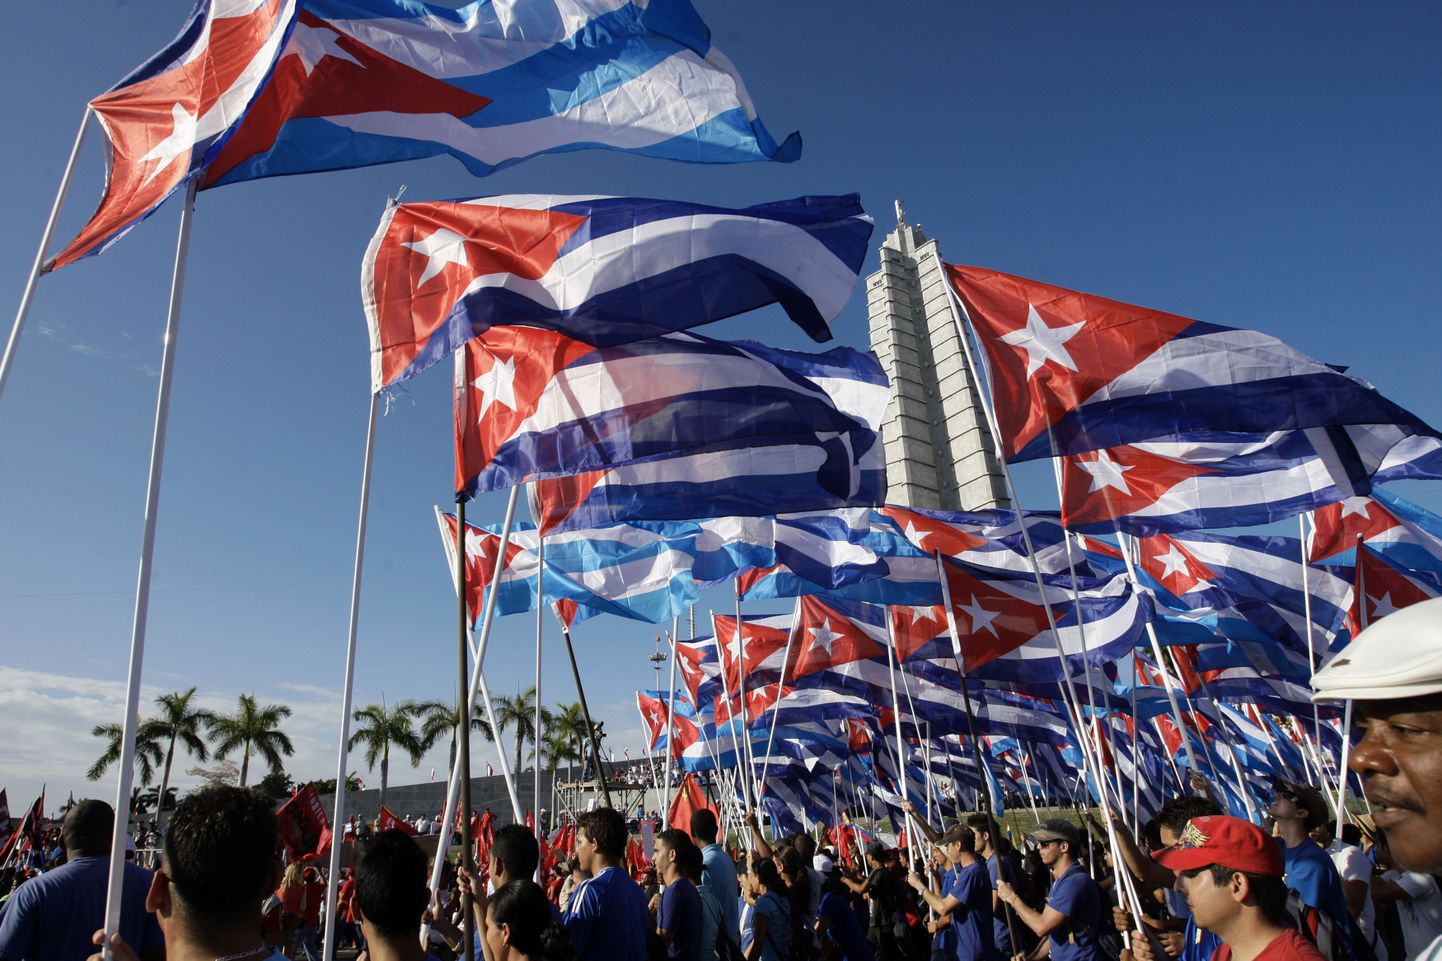 Kuuba presidendi Raúl Castro ettepaneku kohaselt peaksid kuubalased hakkama üle poole sajandi jälle makse maksma